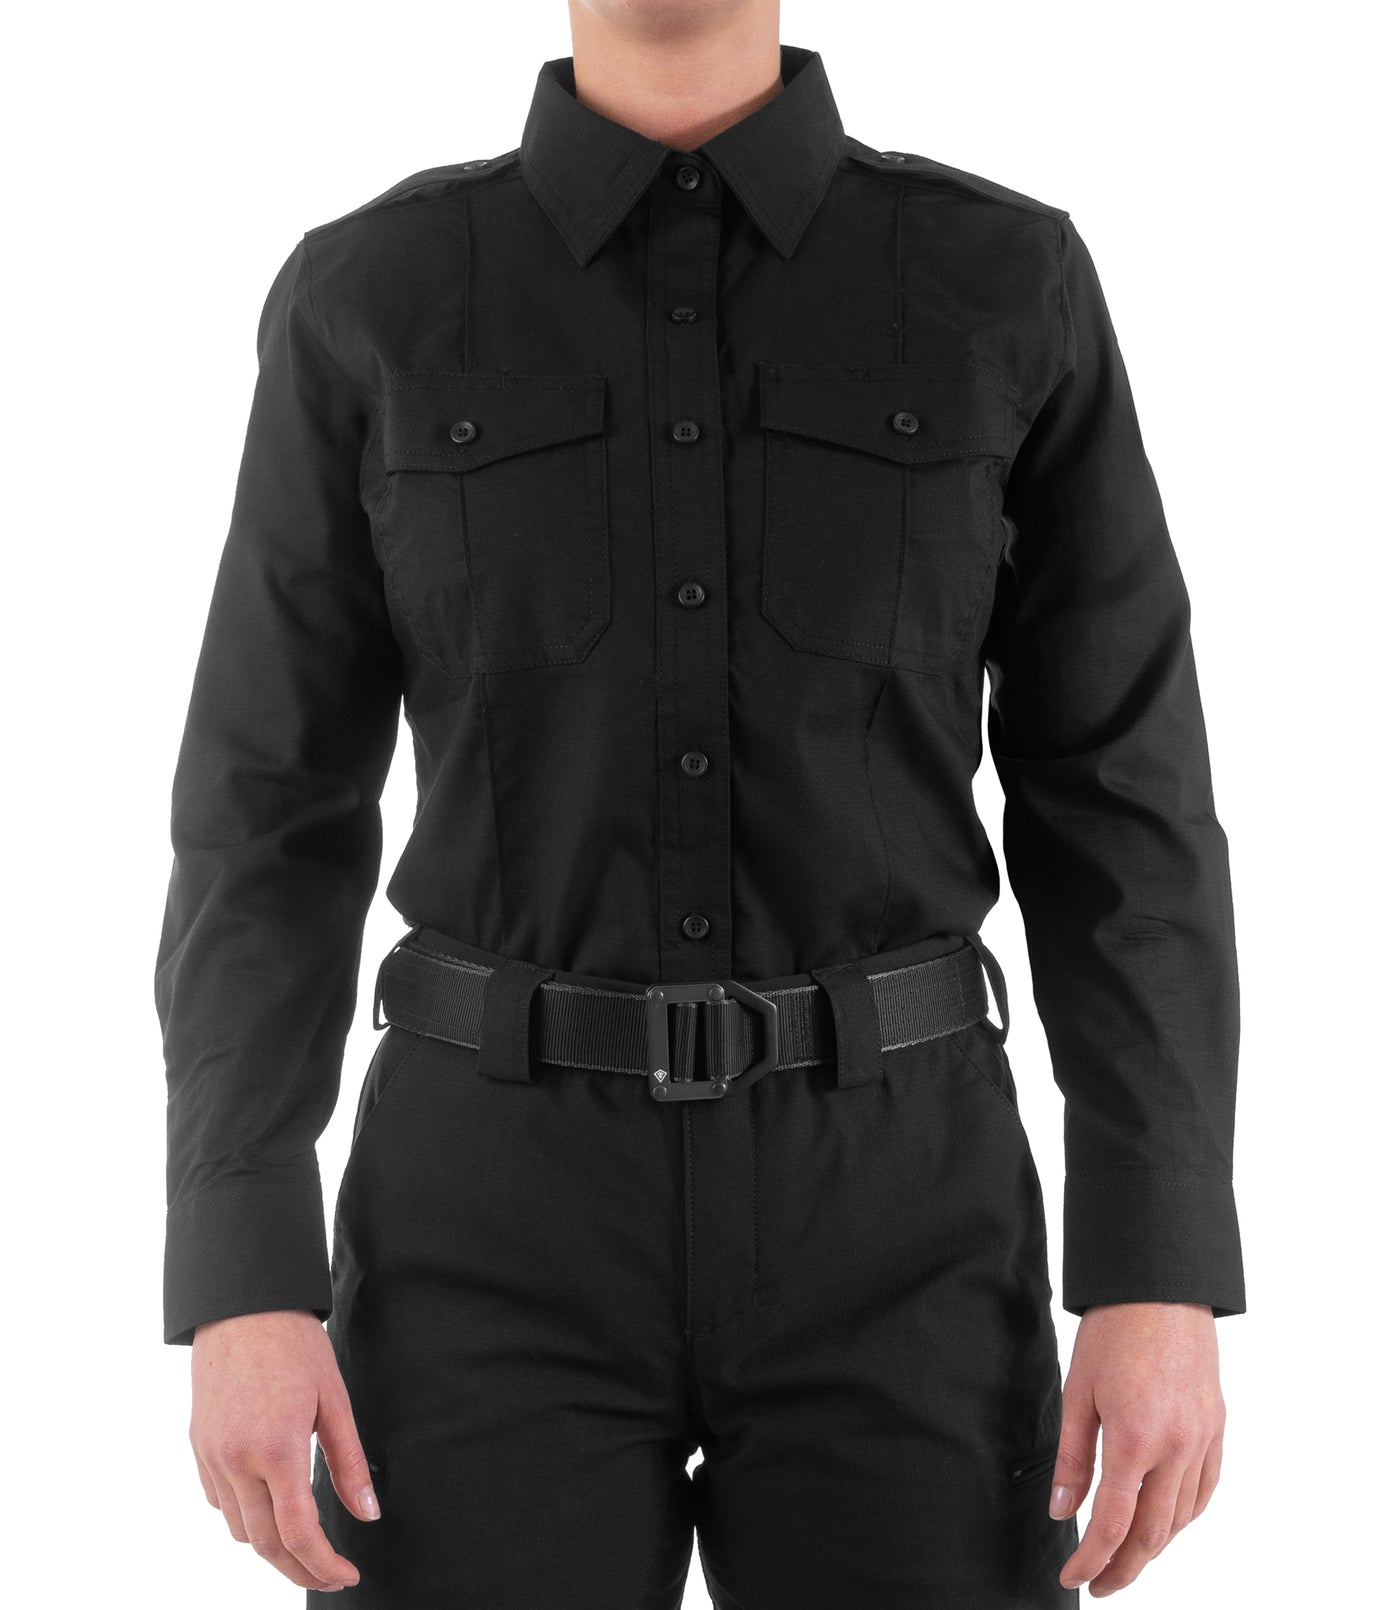 Front of Women's Pro Duty Uniform Shirt in Black